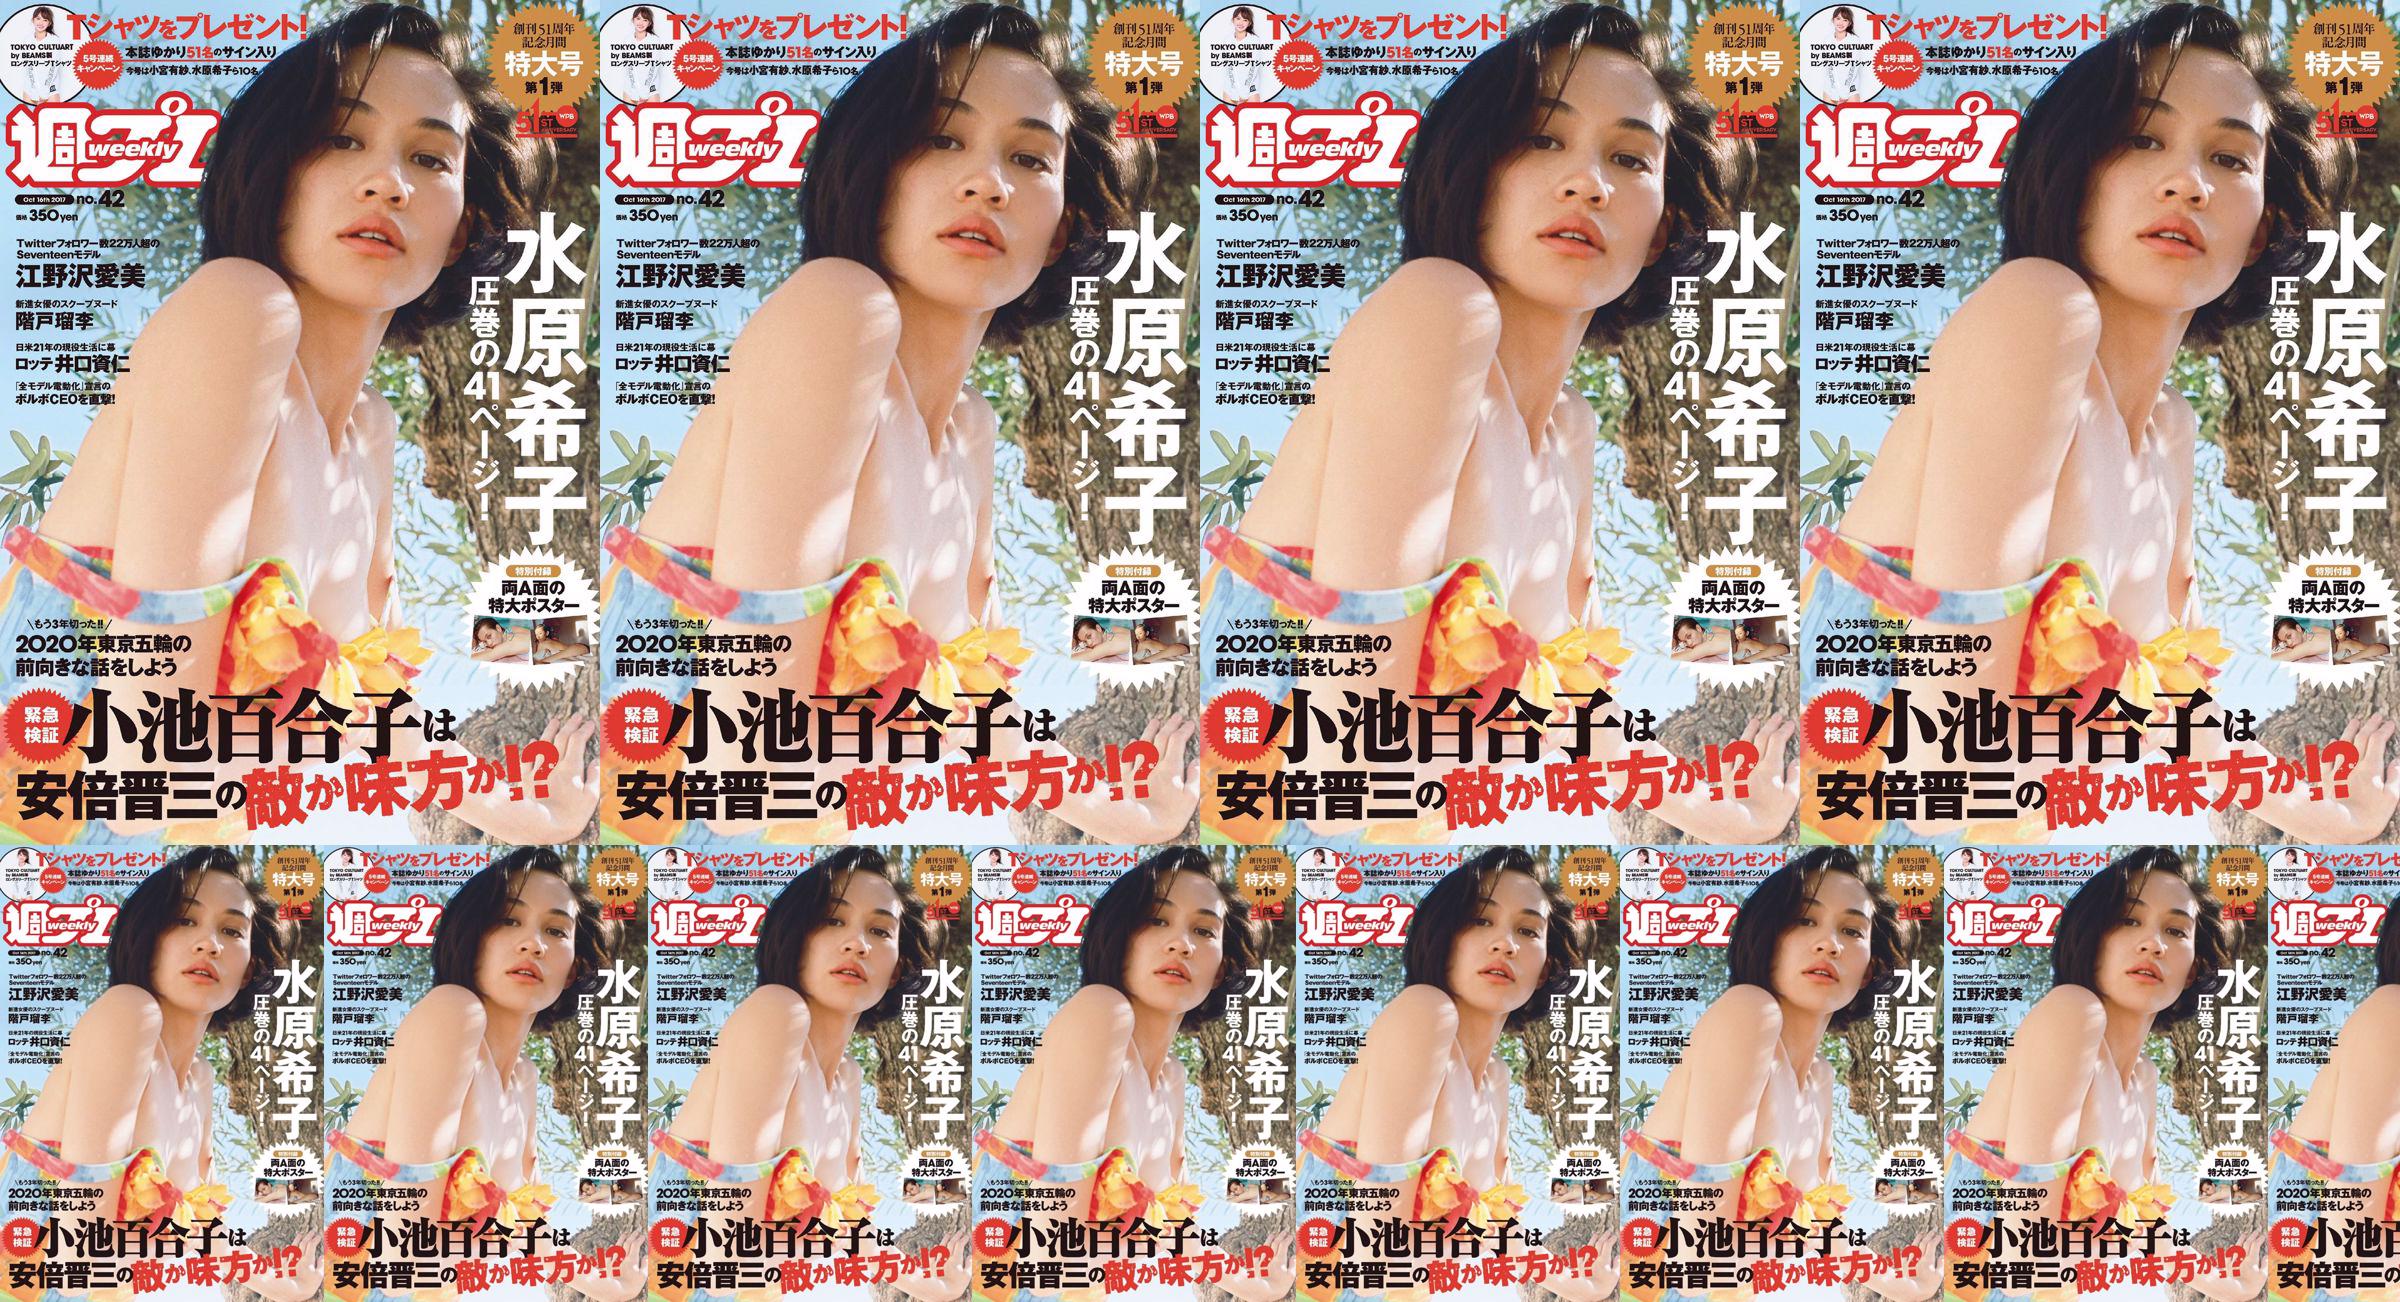 Kiko Mizuhara Manami Enosawa Serina Fukui Miu Nakamura Ruri Shinato [Weekly Playboy] 2017 No.42 Photo Magazine No.9bec73 Pagina 17